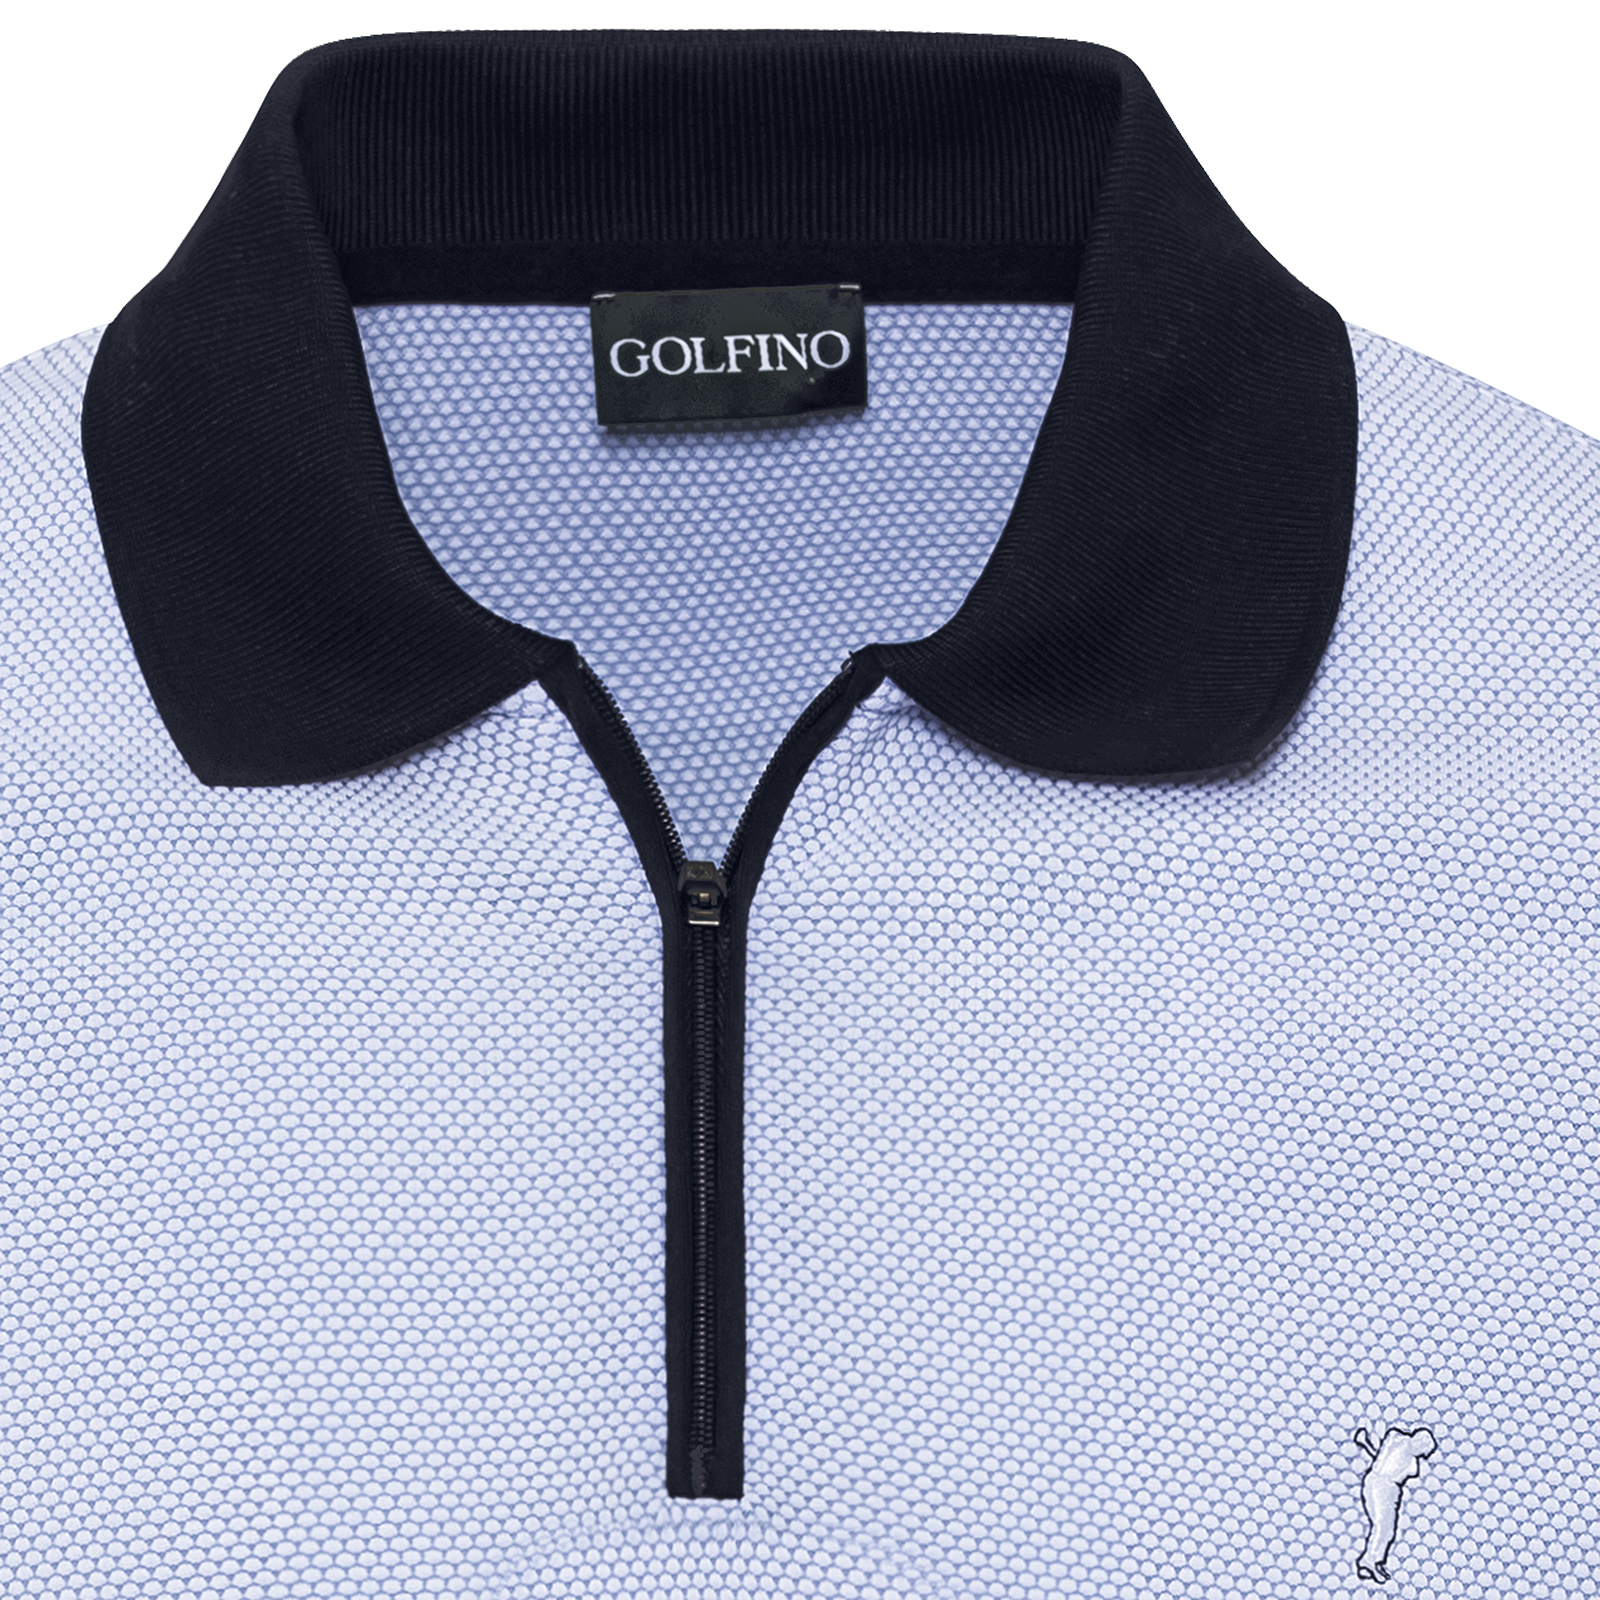 Herren Golf Poloshirt feuchtigkeitsregulierend aus Bubble Jaquard